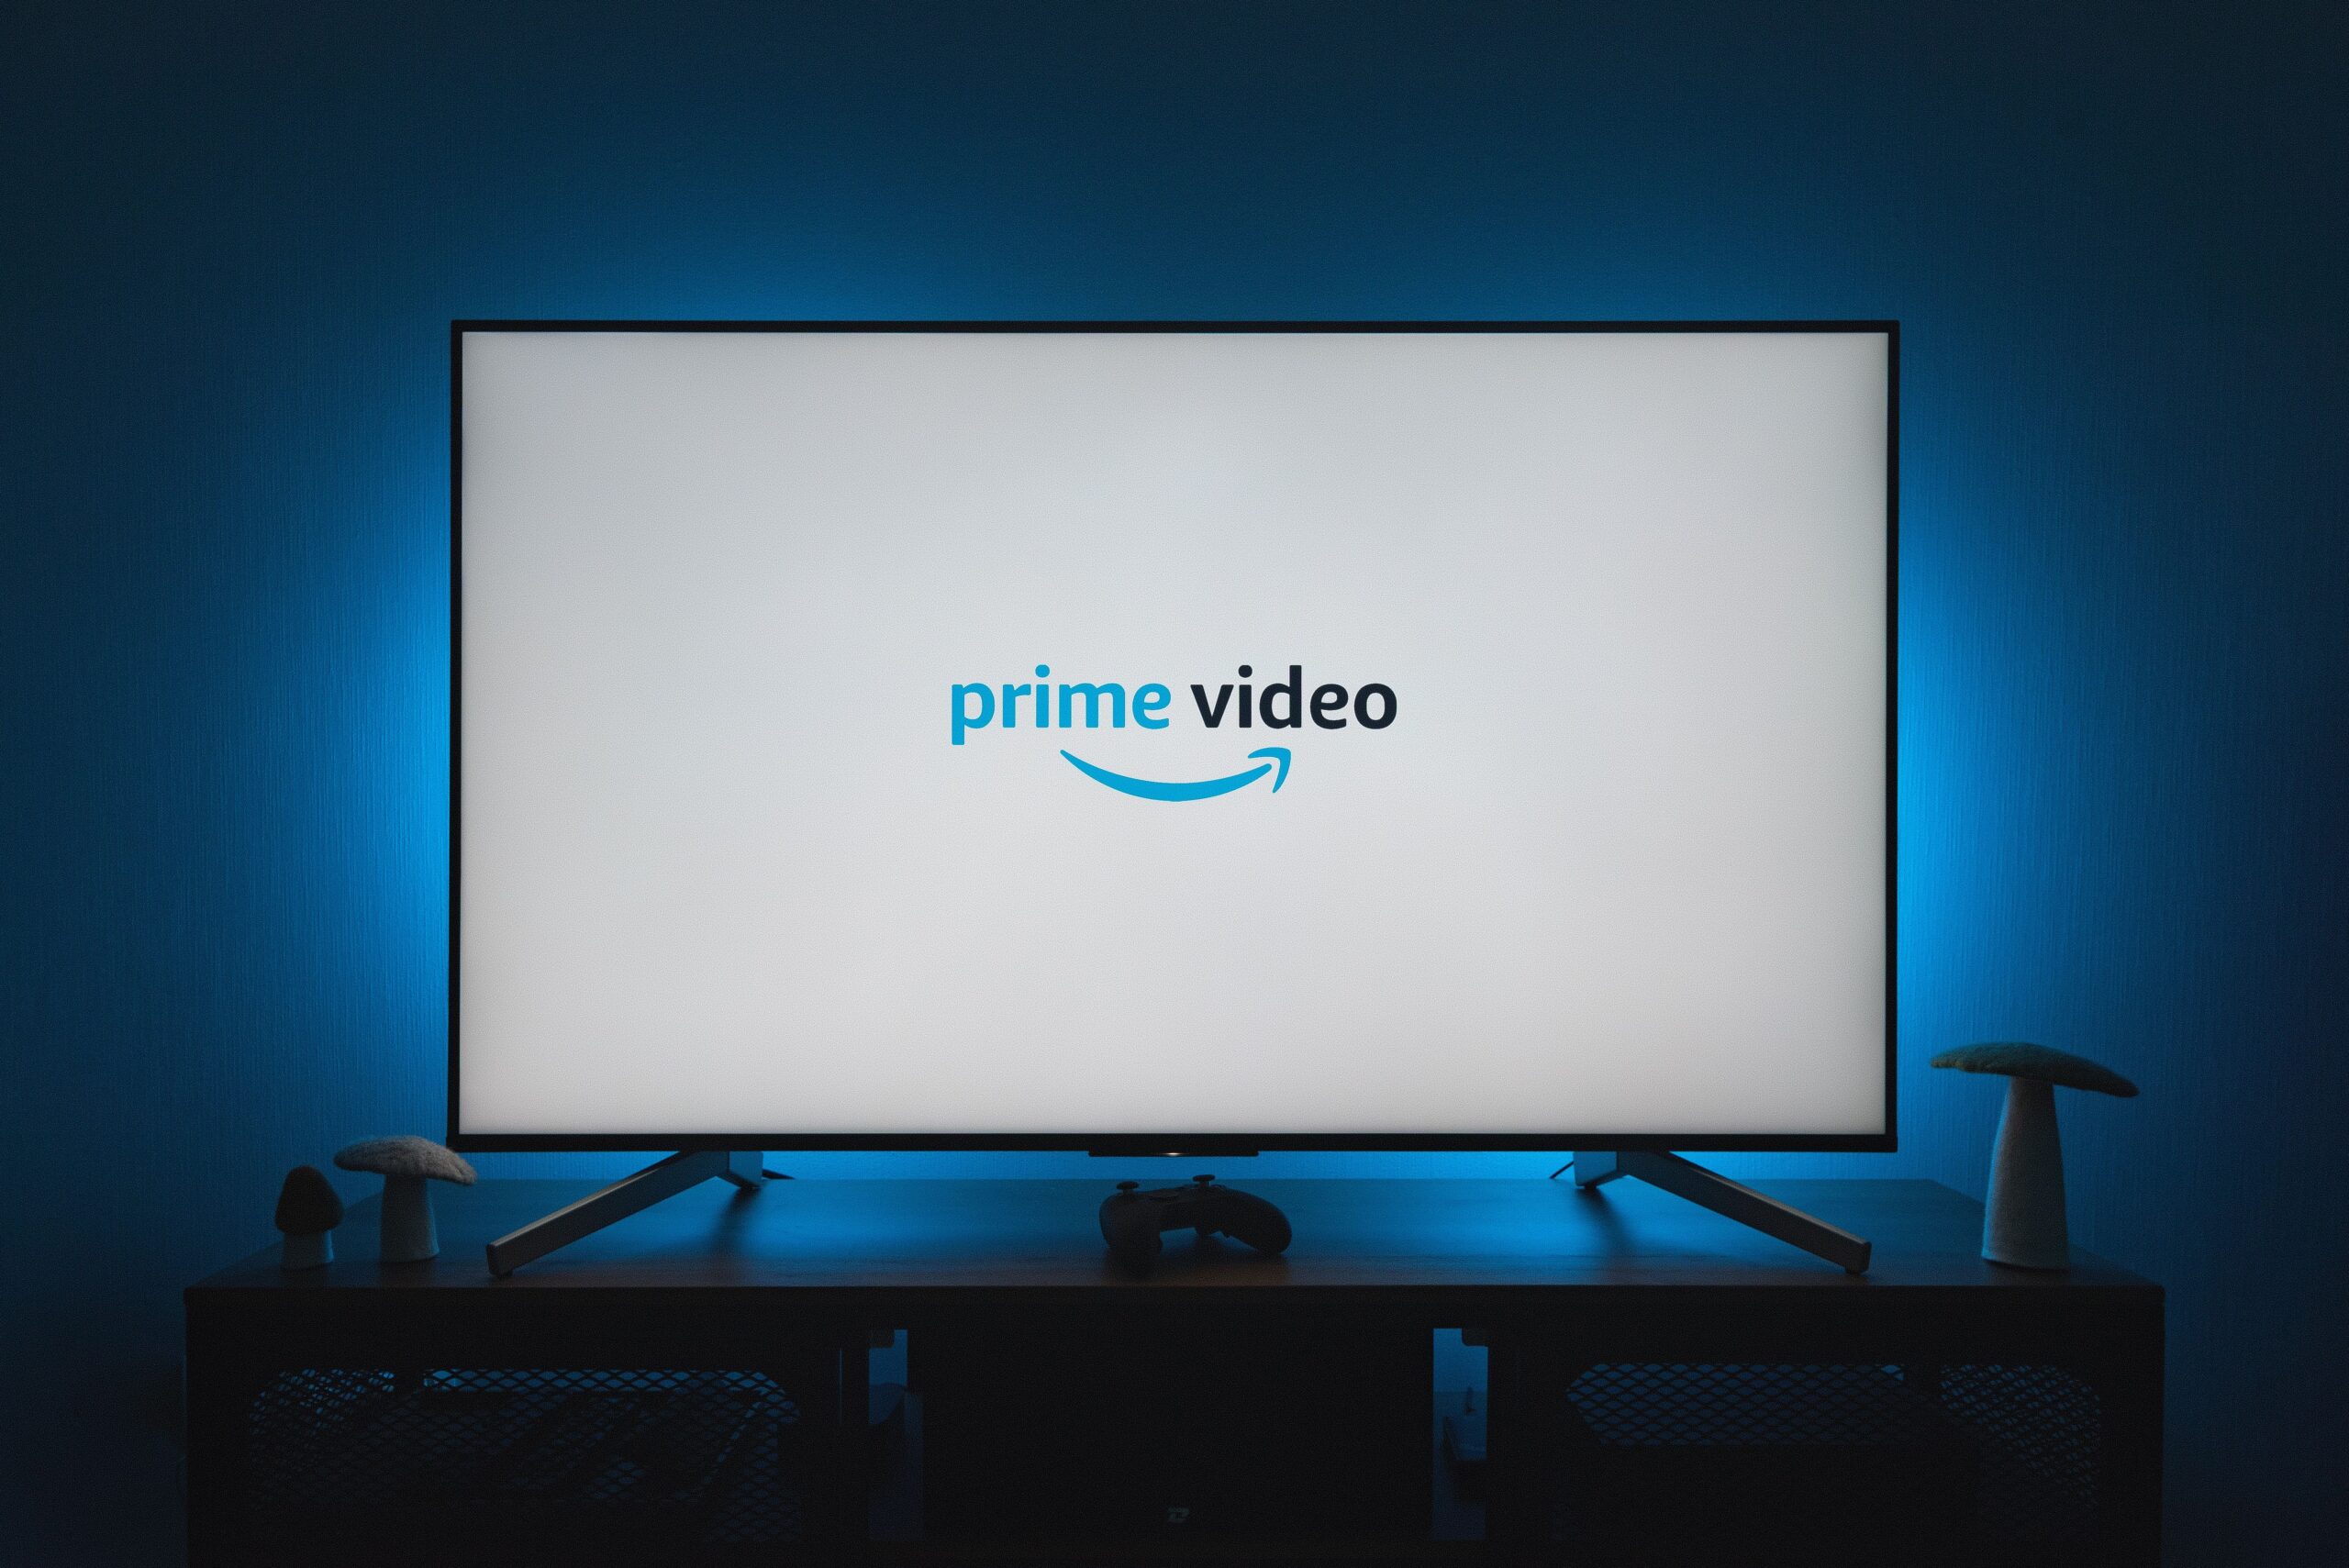 Amazon Prime Video obtient une refonte très appréciée, et il ressemble à Netflix thibault penin GgOitQkoioo unsplash scaled